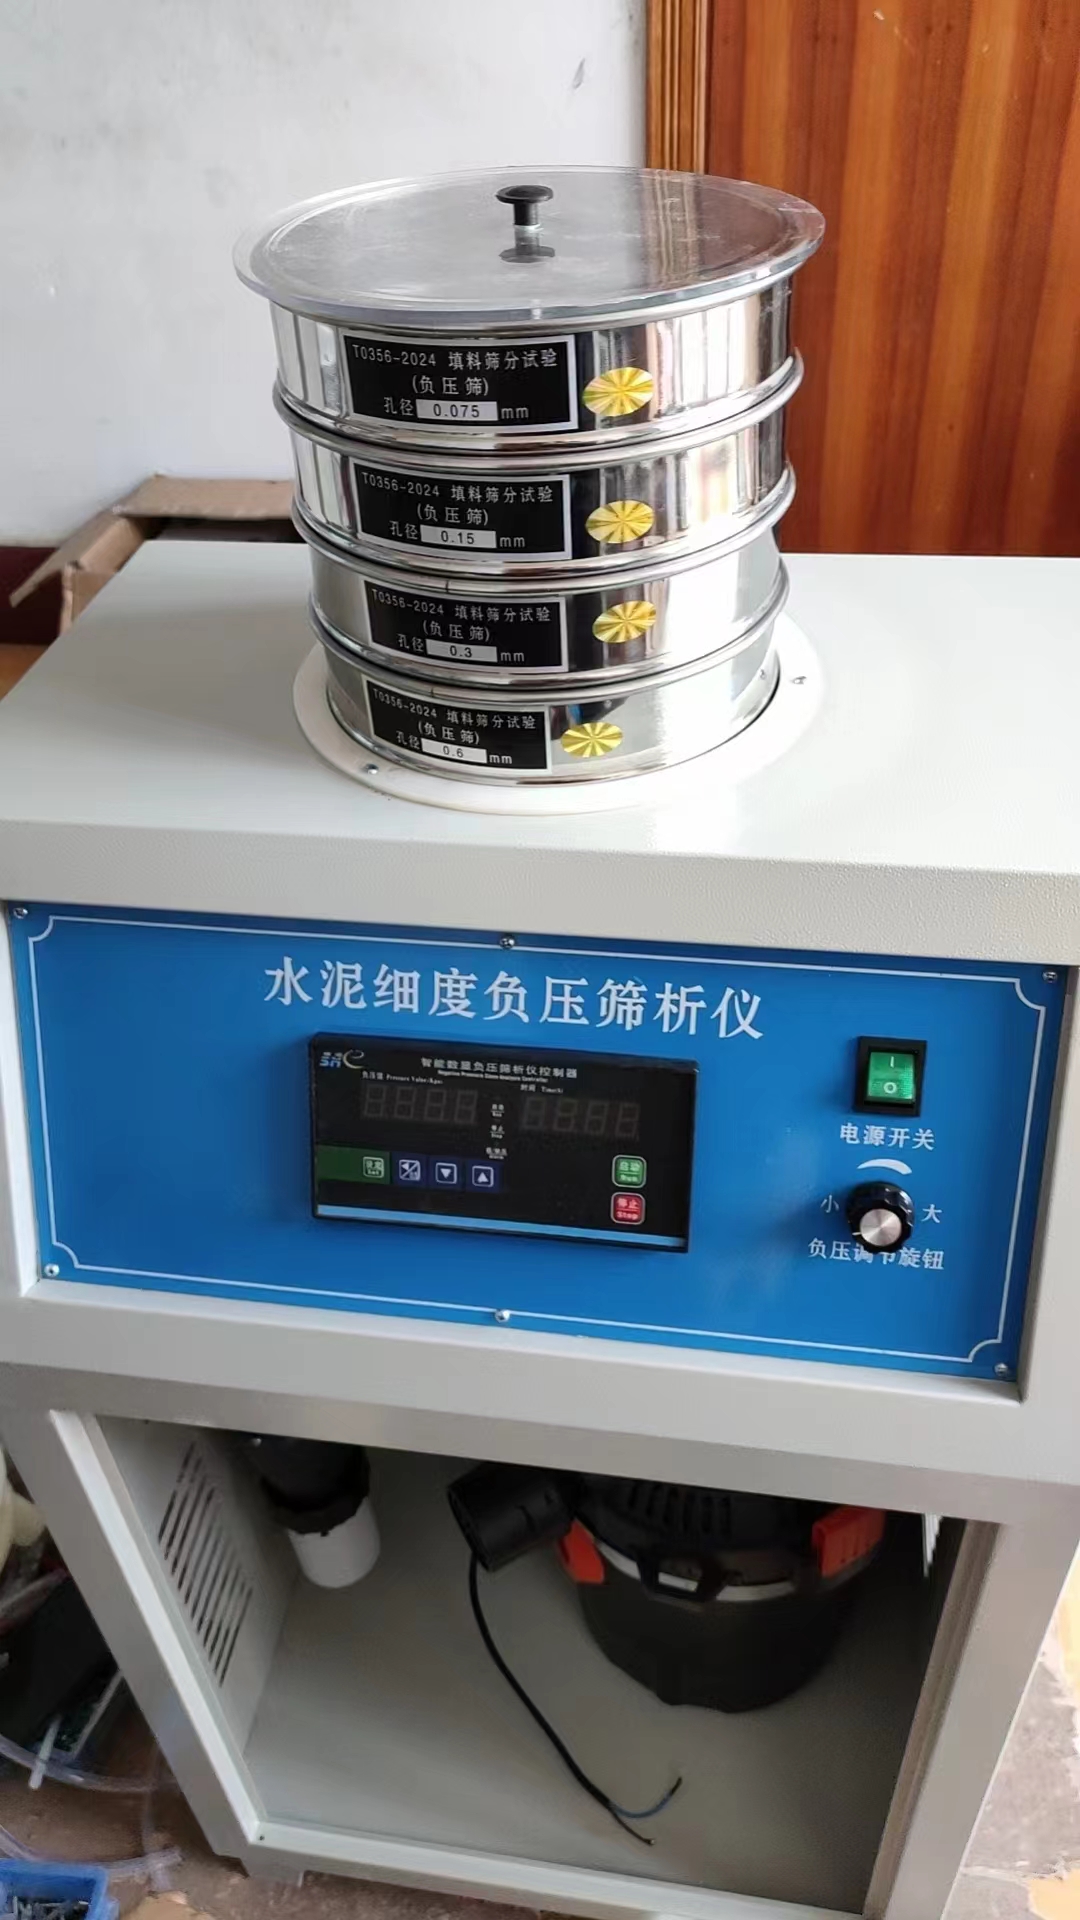 上海市T0356-2024新标准负压法填料筛分试验仪厂家